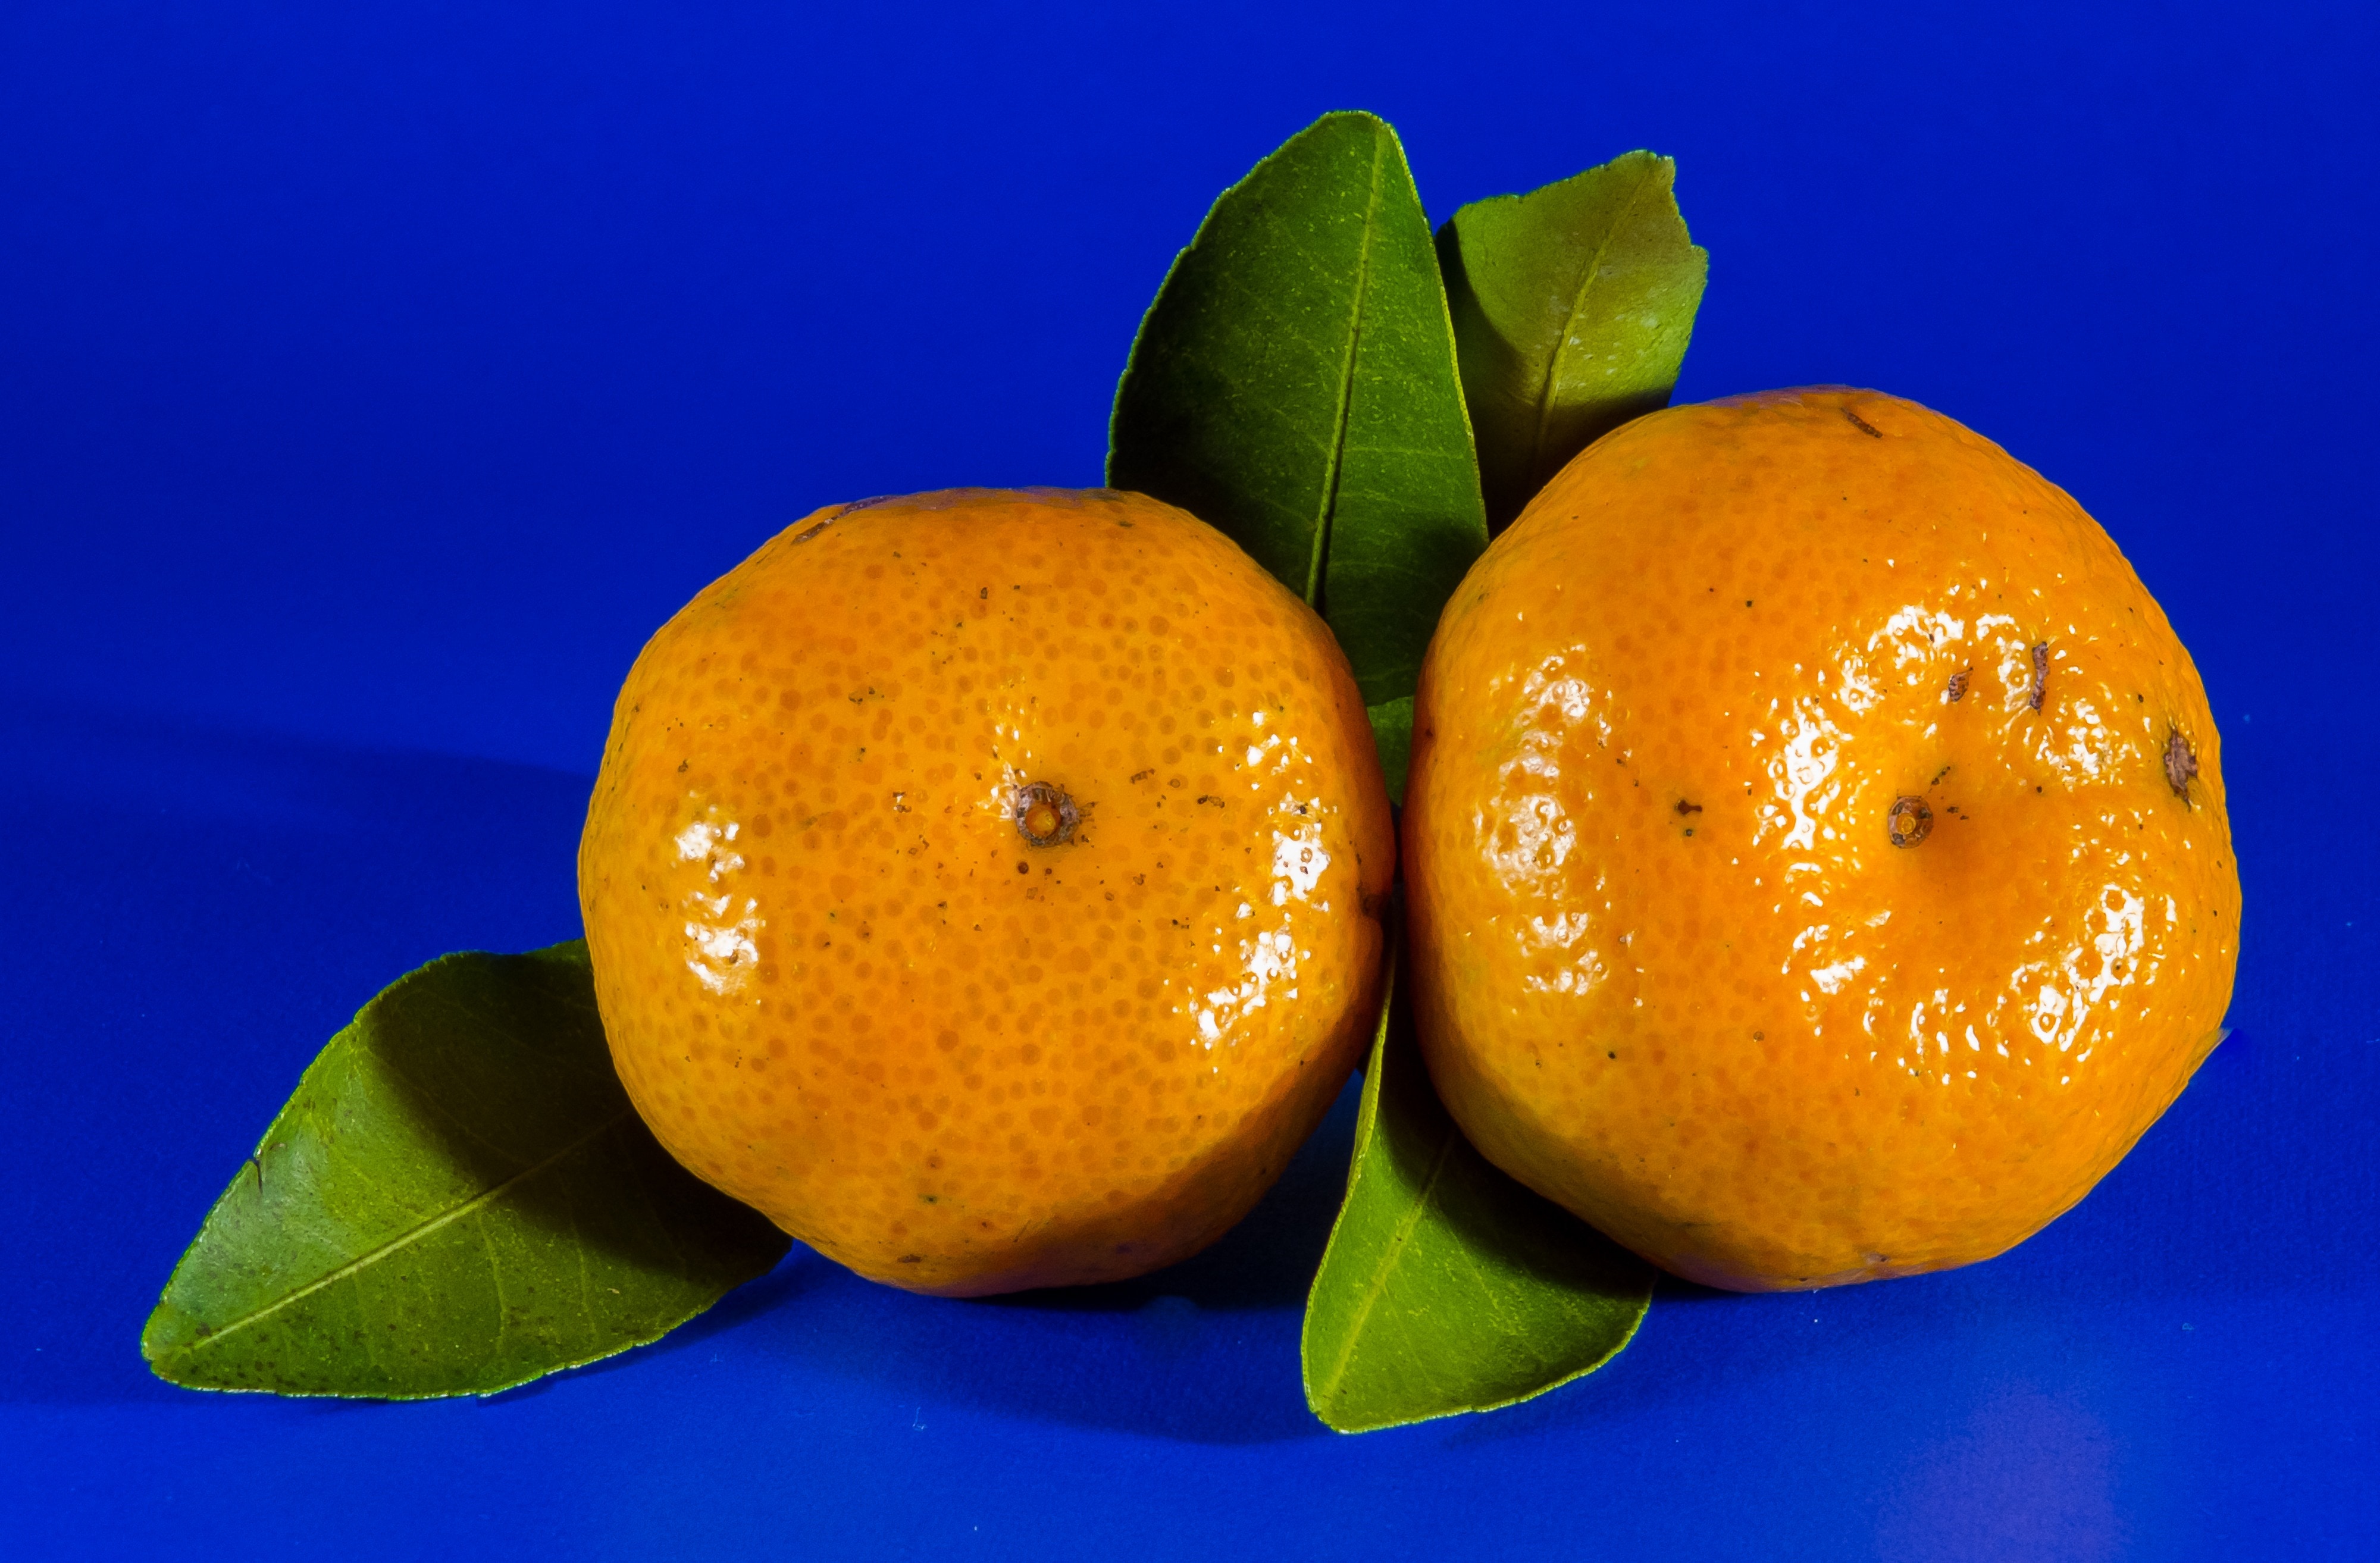 Мандарин род. Фейхоа мандарин апельсин. Цитрус мандарин +апельсин. Два мандарина. Кюрасао фрукт.